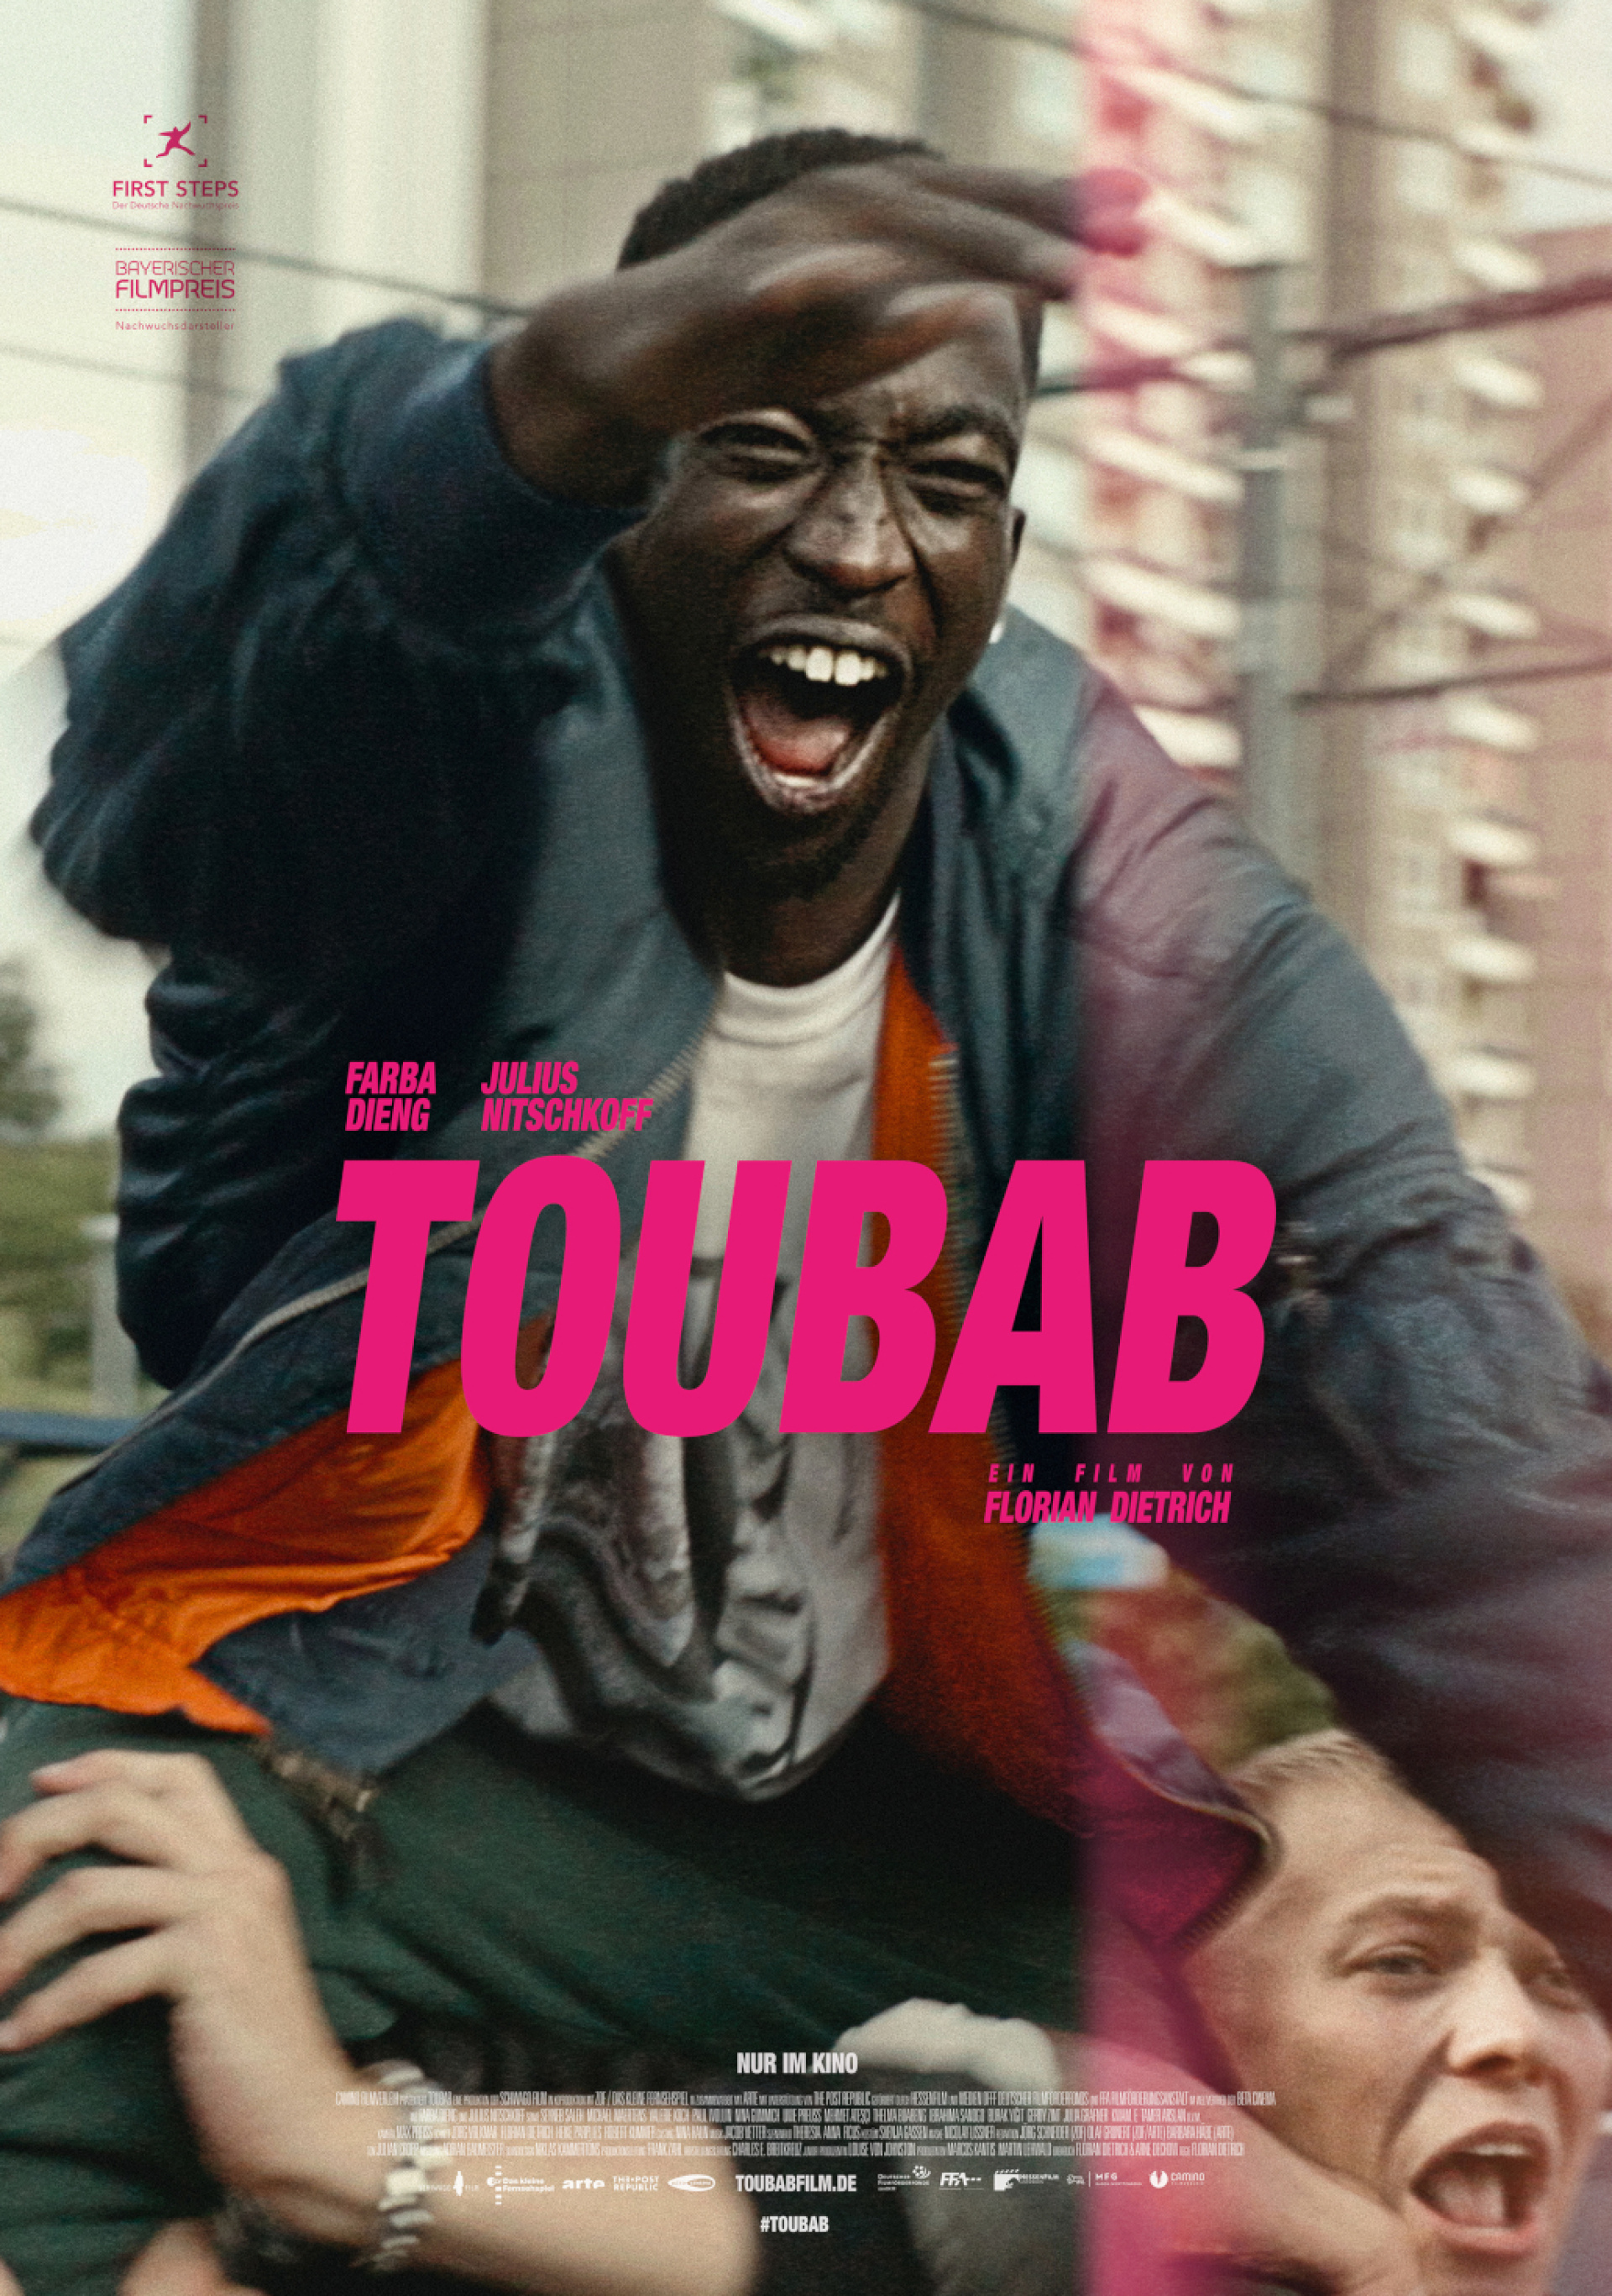 Abbildung von Poster - Toubab